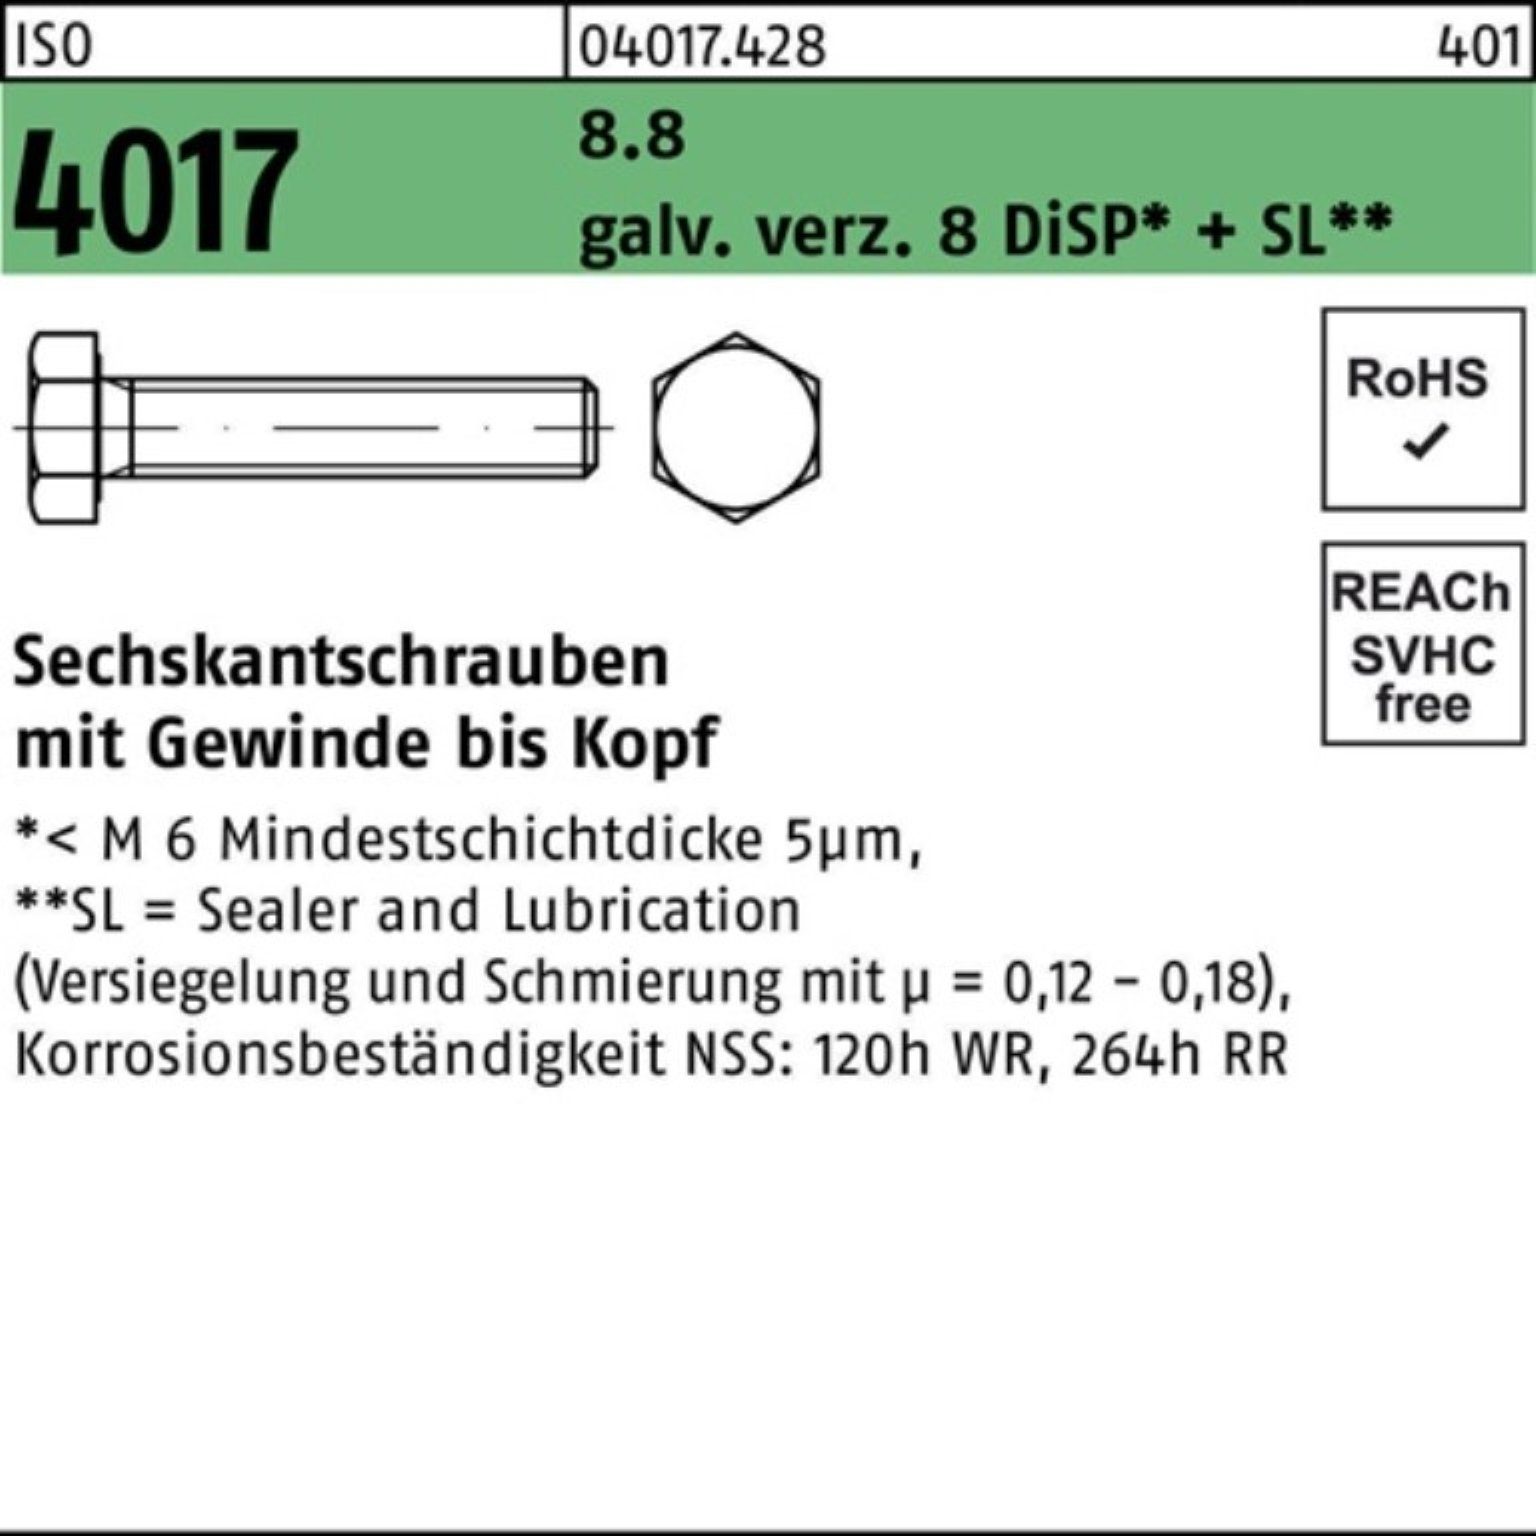 VG ISO Sechskantschraube Bufab 8.8 DiSP+ Pack 500er galv.verz. 10 Sechskantschraube 4017 8 M3x